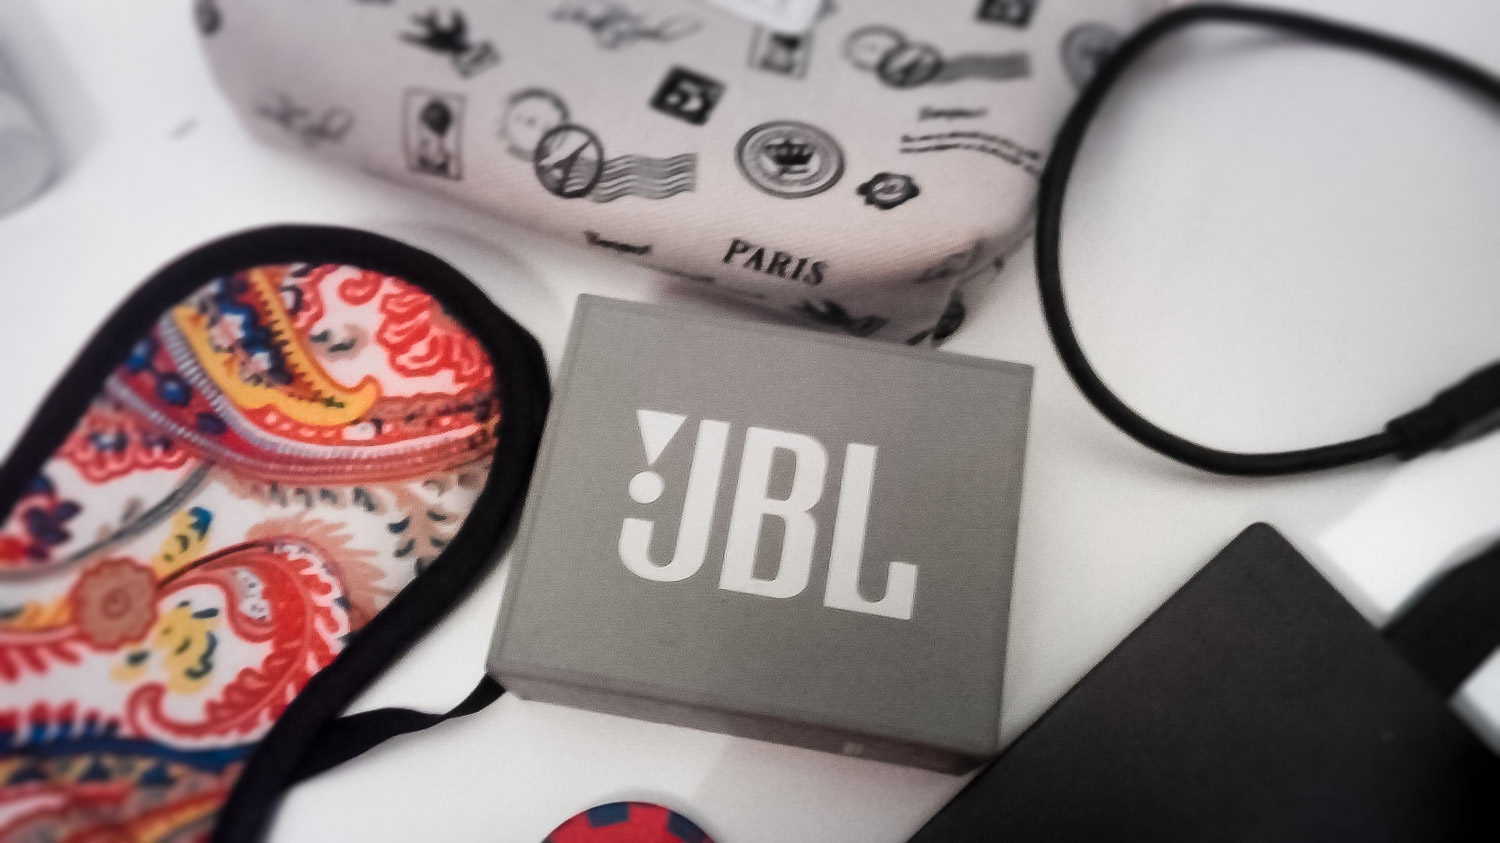 Портативная колонка JBL